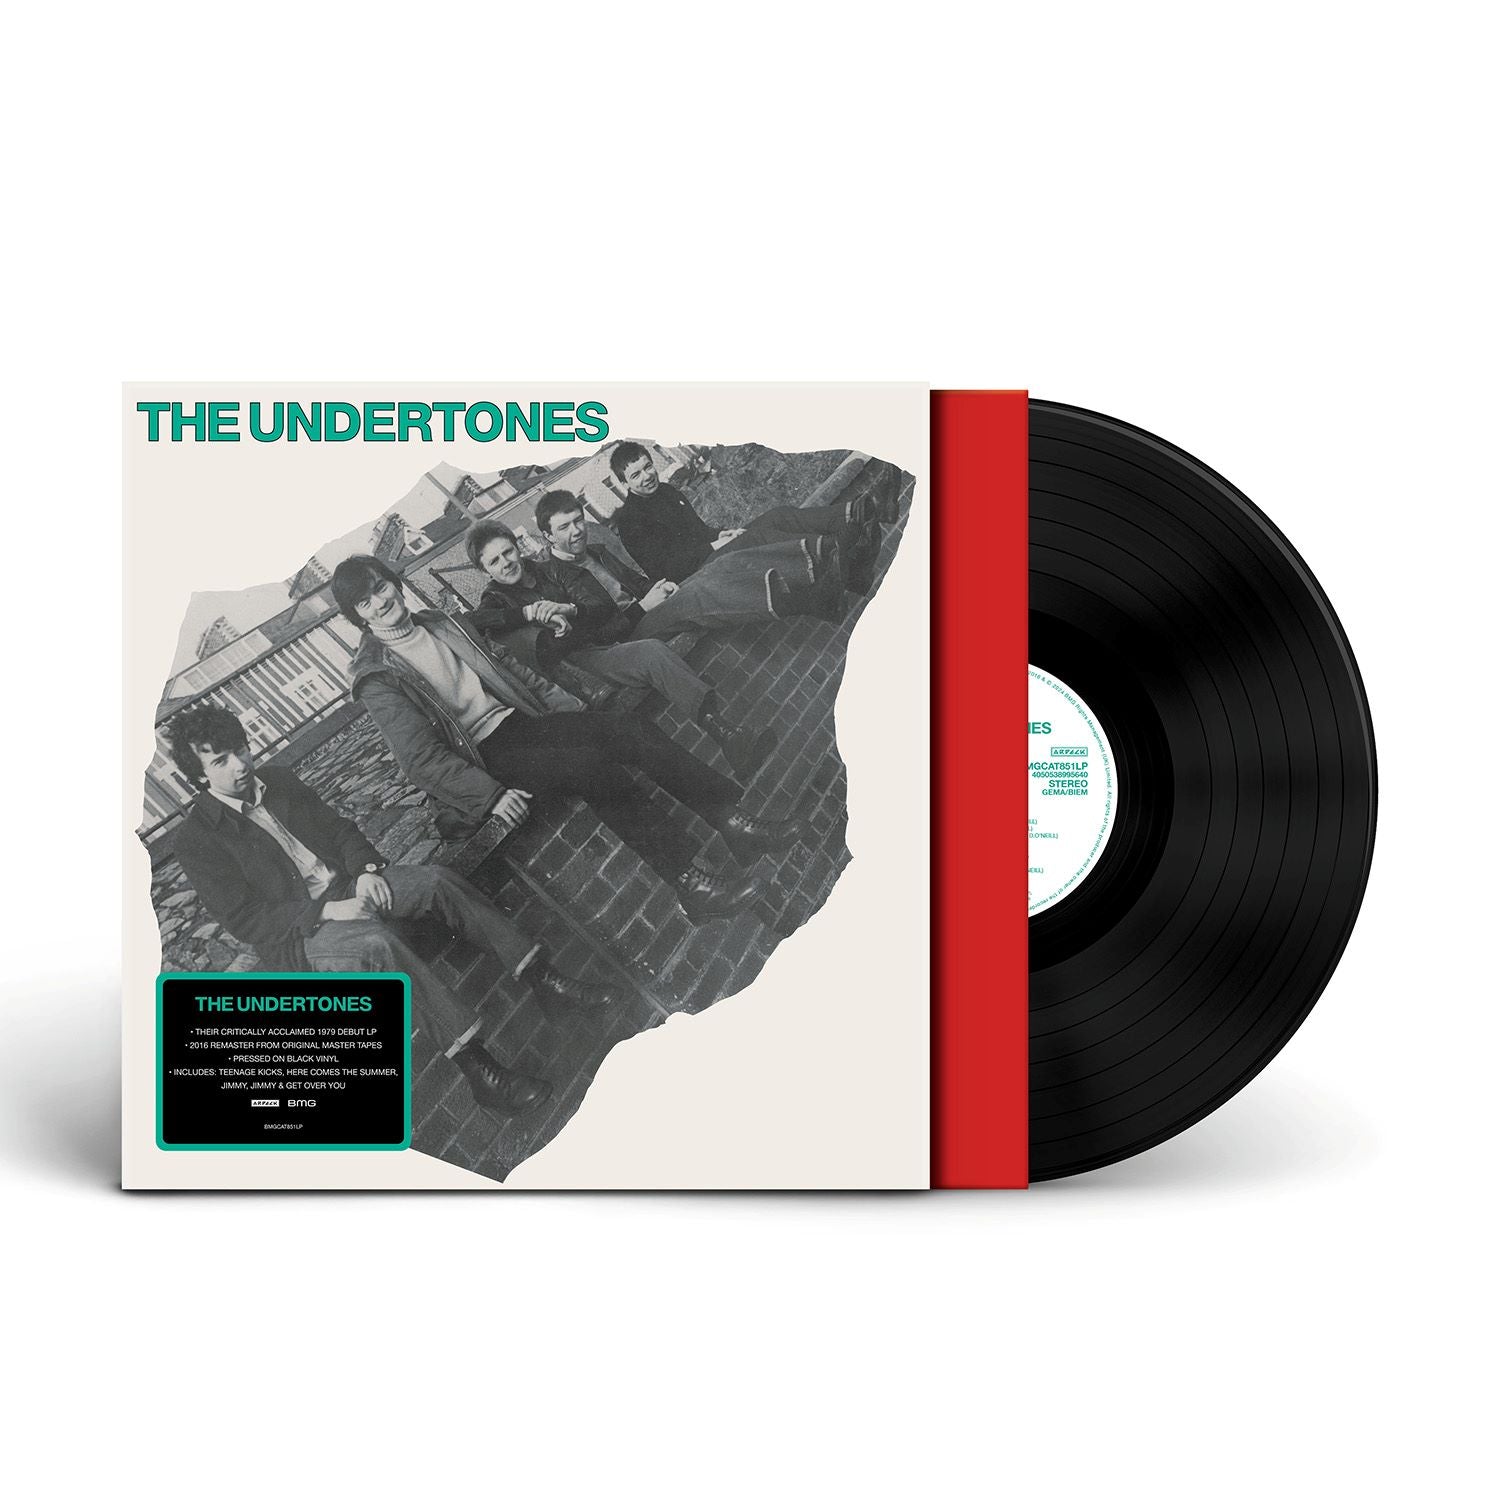 The Undertones - The Undertones: Vinyl LP